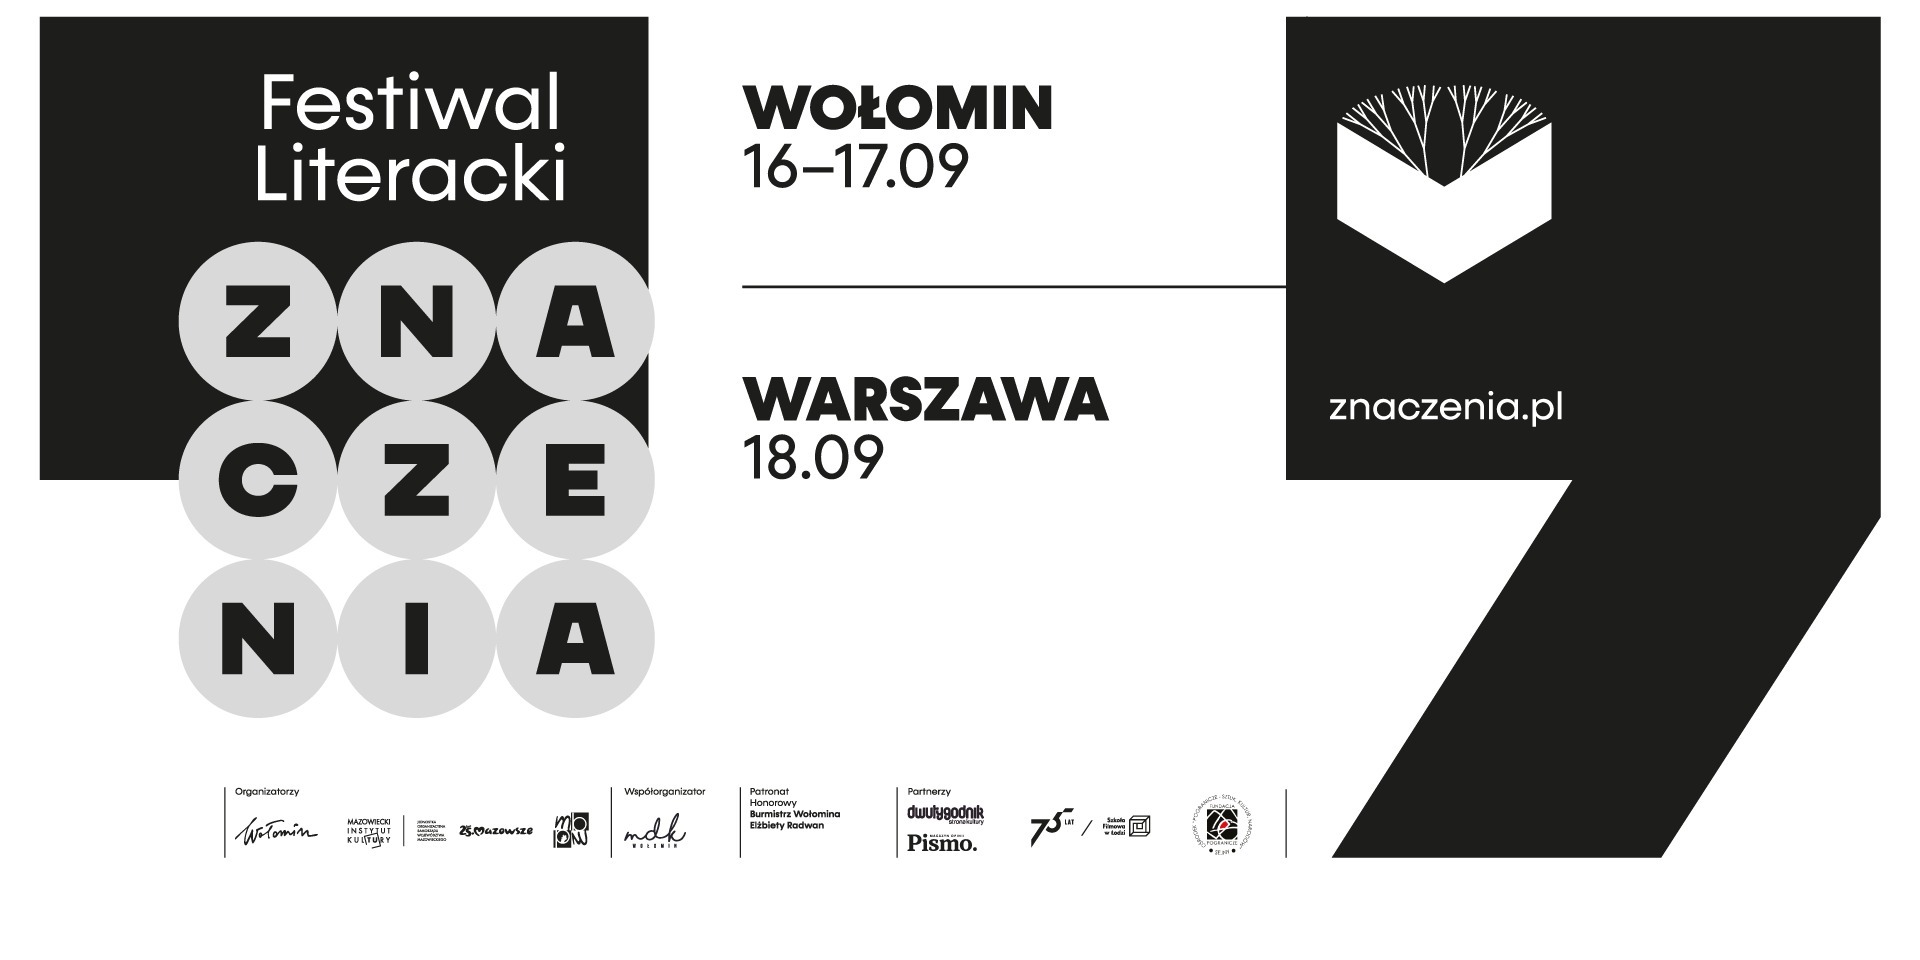 Festiwal Literacki Znaczenia, 16-17 września Wołomin, 18 września Warszawa